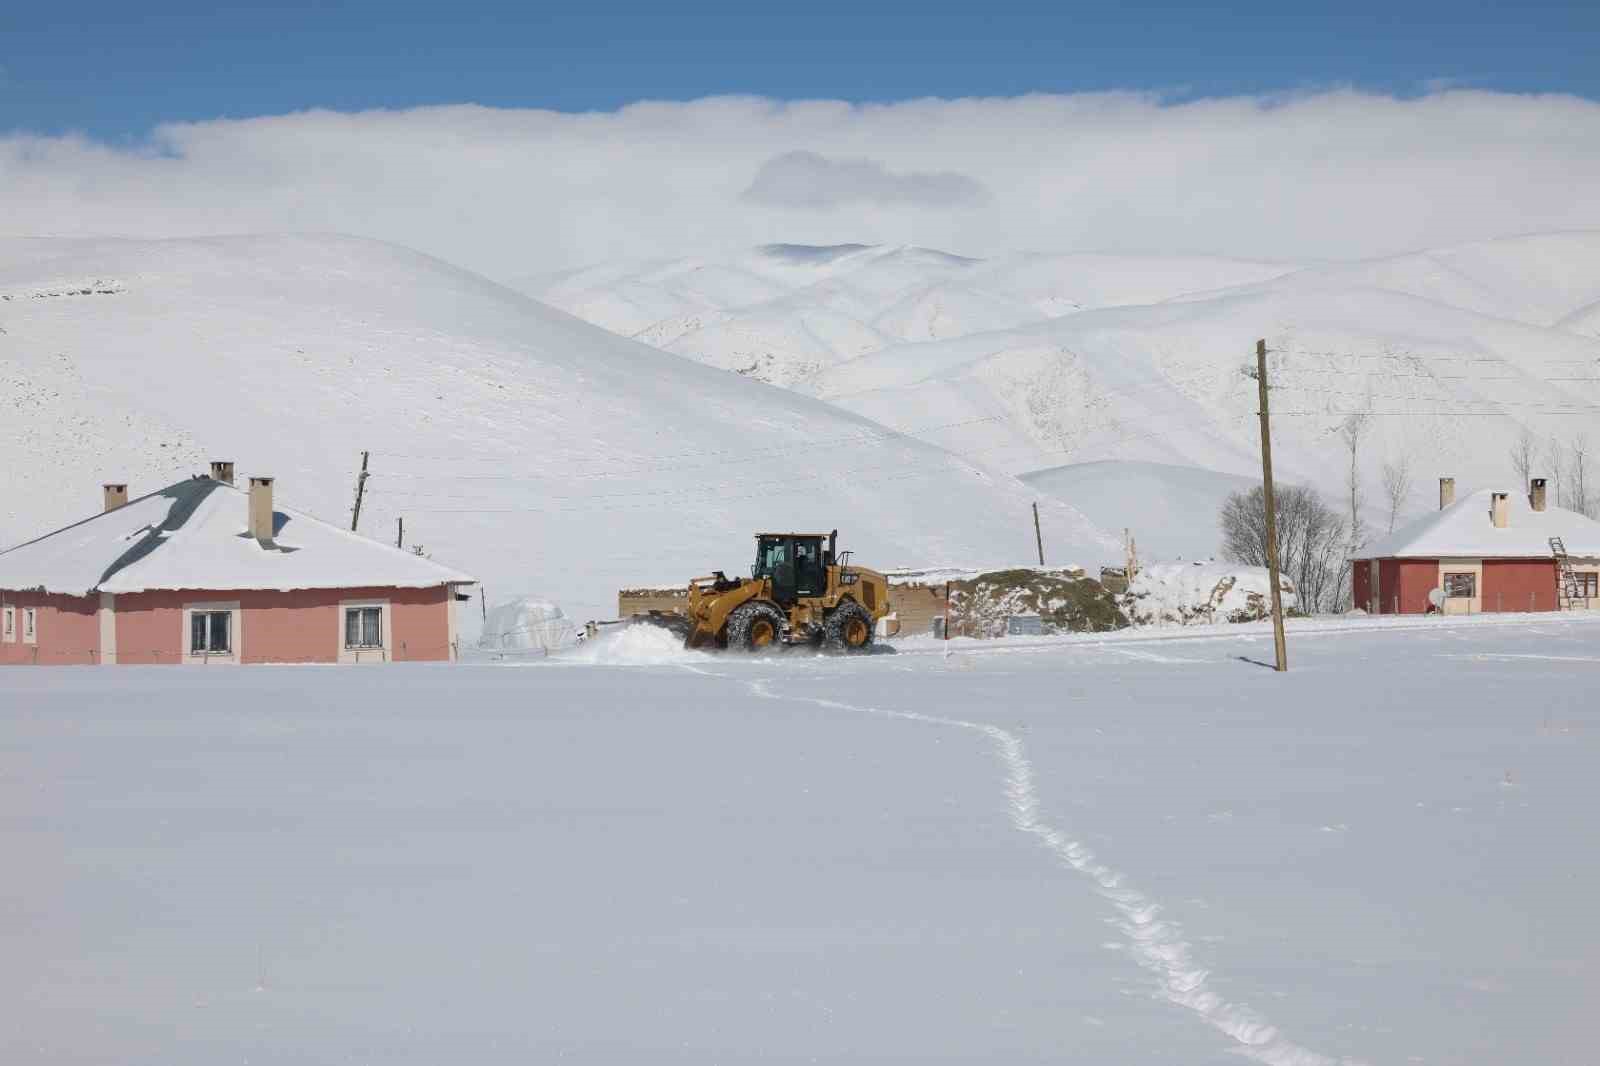 Gürpınar Belediyesi karla mücadele çalışmalarını aralıksız sürdürüyor